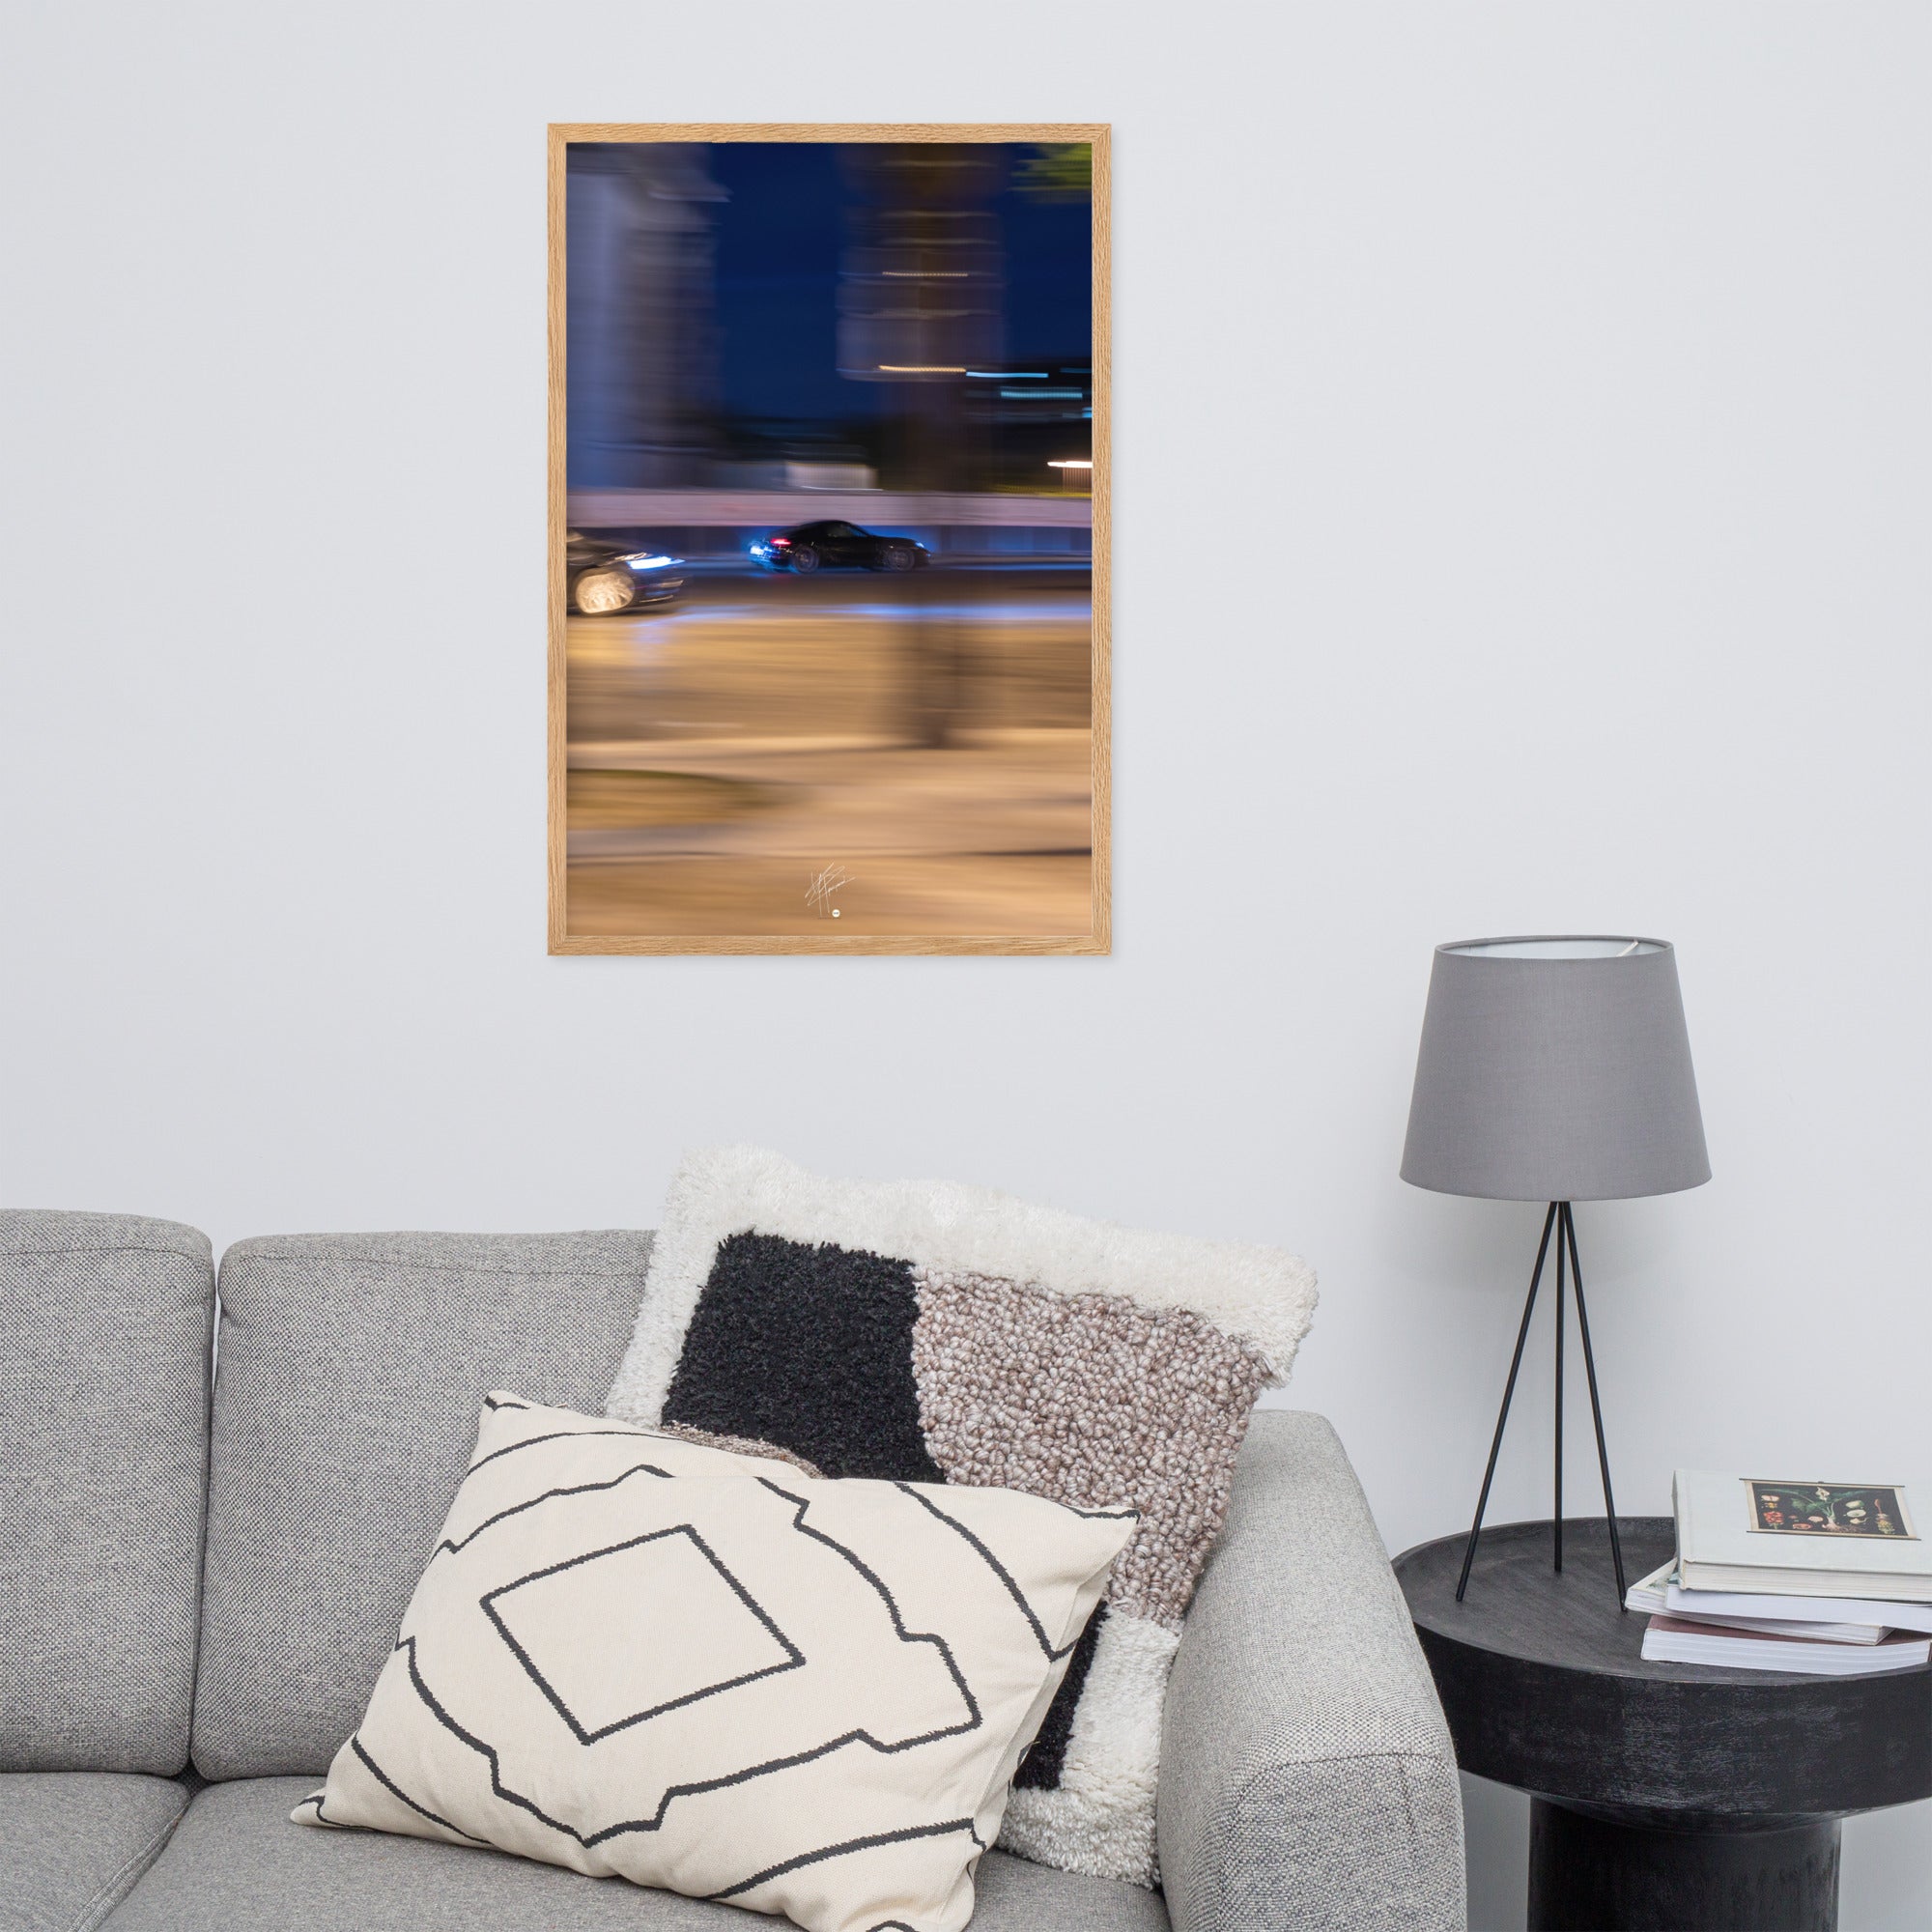 Photographie de la Place de l'Étoile capturant une Porsche au milieu de lumières floues de la circulation. La technique de pause longue crée un contraste saisissant entre mouvement et immobilité, illustrant l'effervescence parisienne.